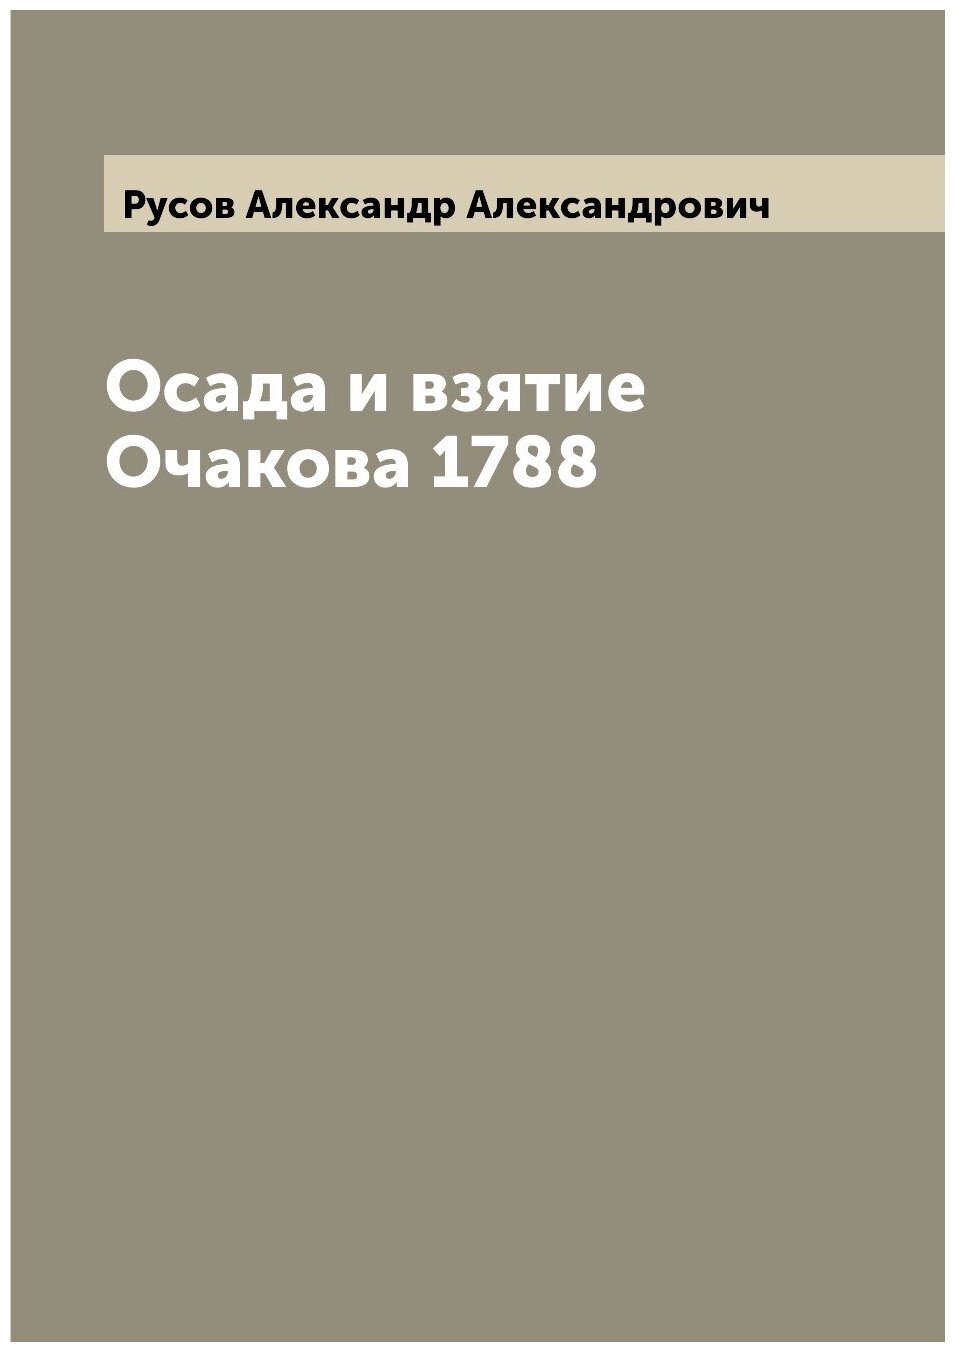 Осада и взятие Очакова 1788